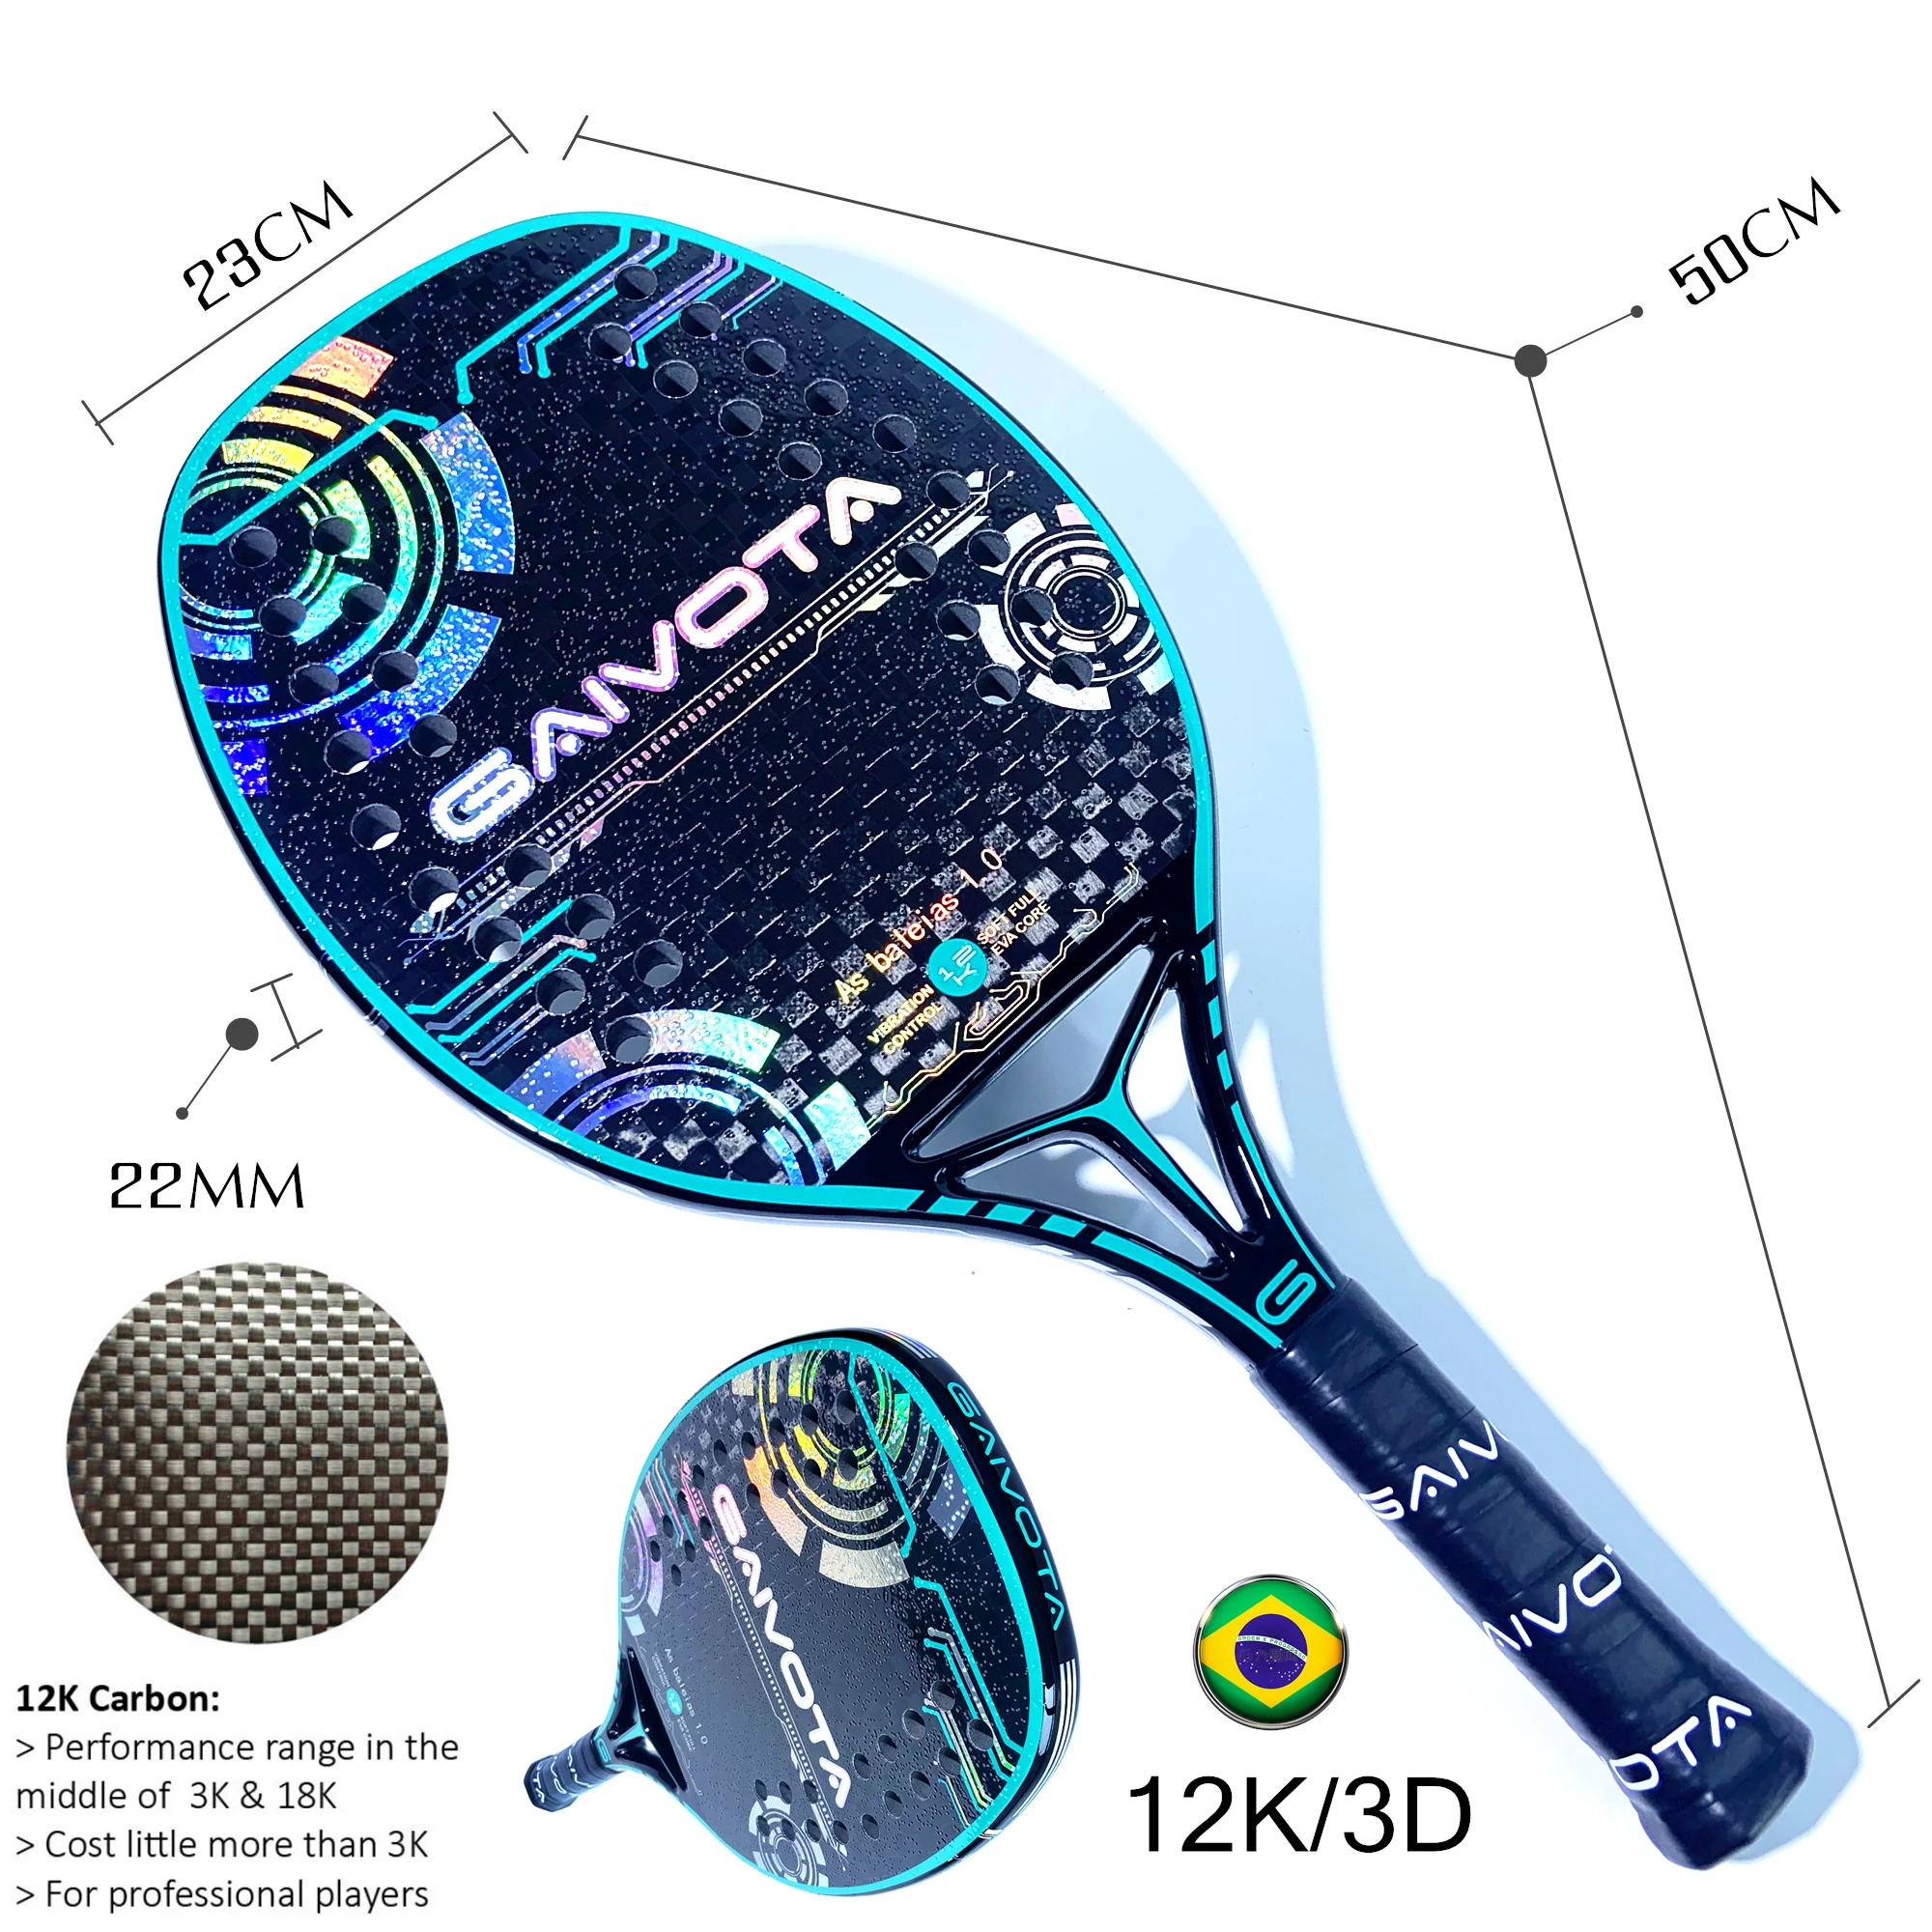 GAIVOTA-Raquete de Beach Tennis com superfície áspera e mochila, 3K, 12K, 18K, Novo, 2023